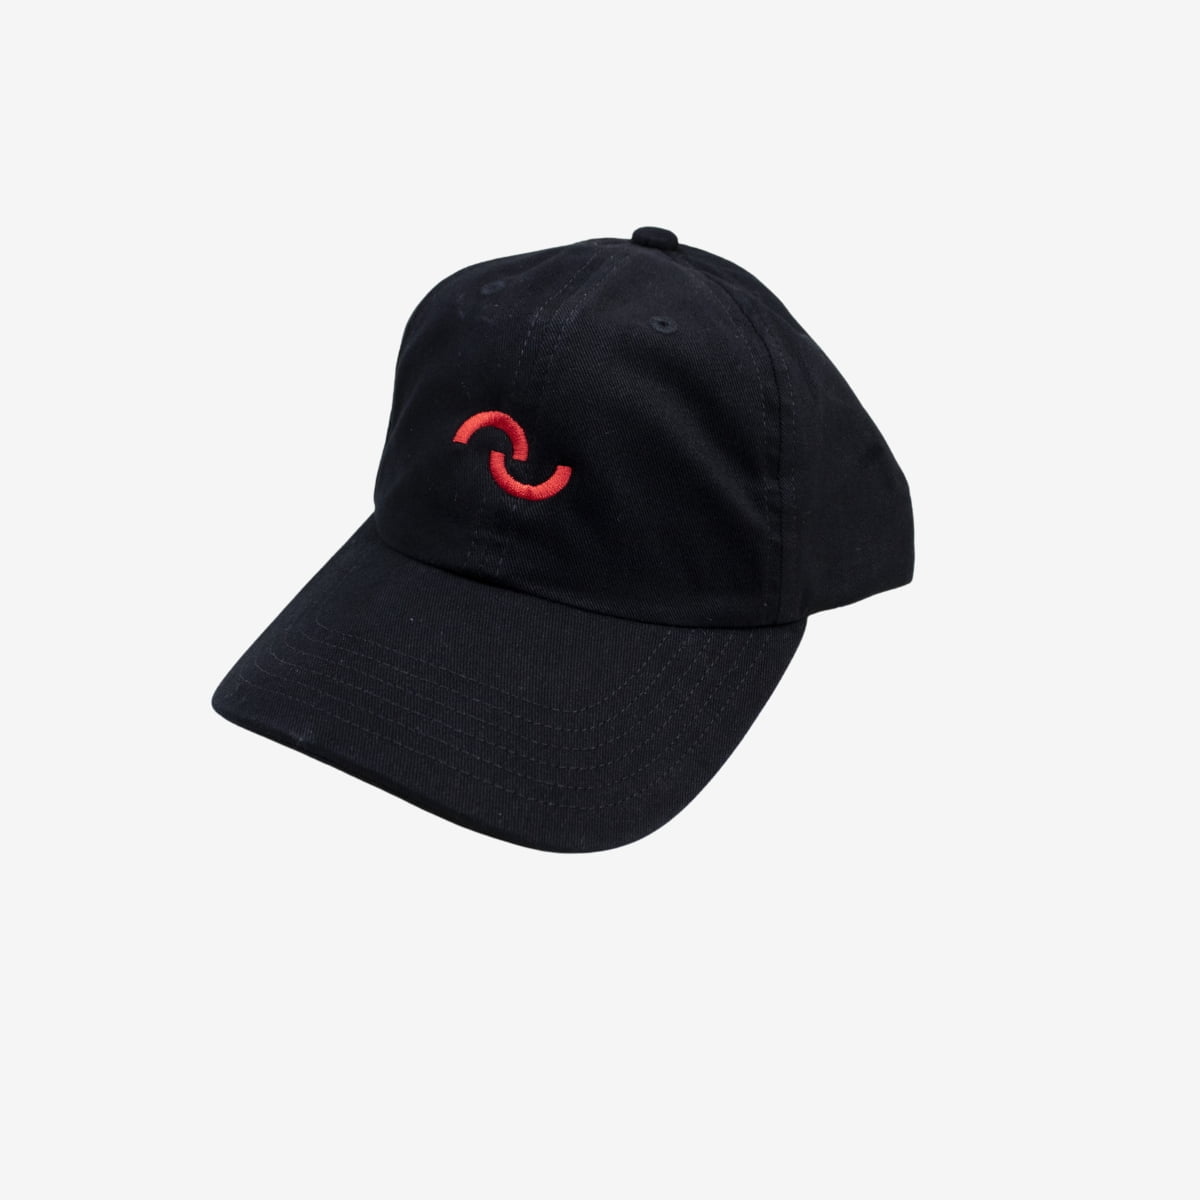 embroider black cap